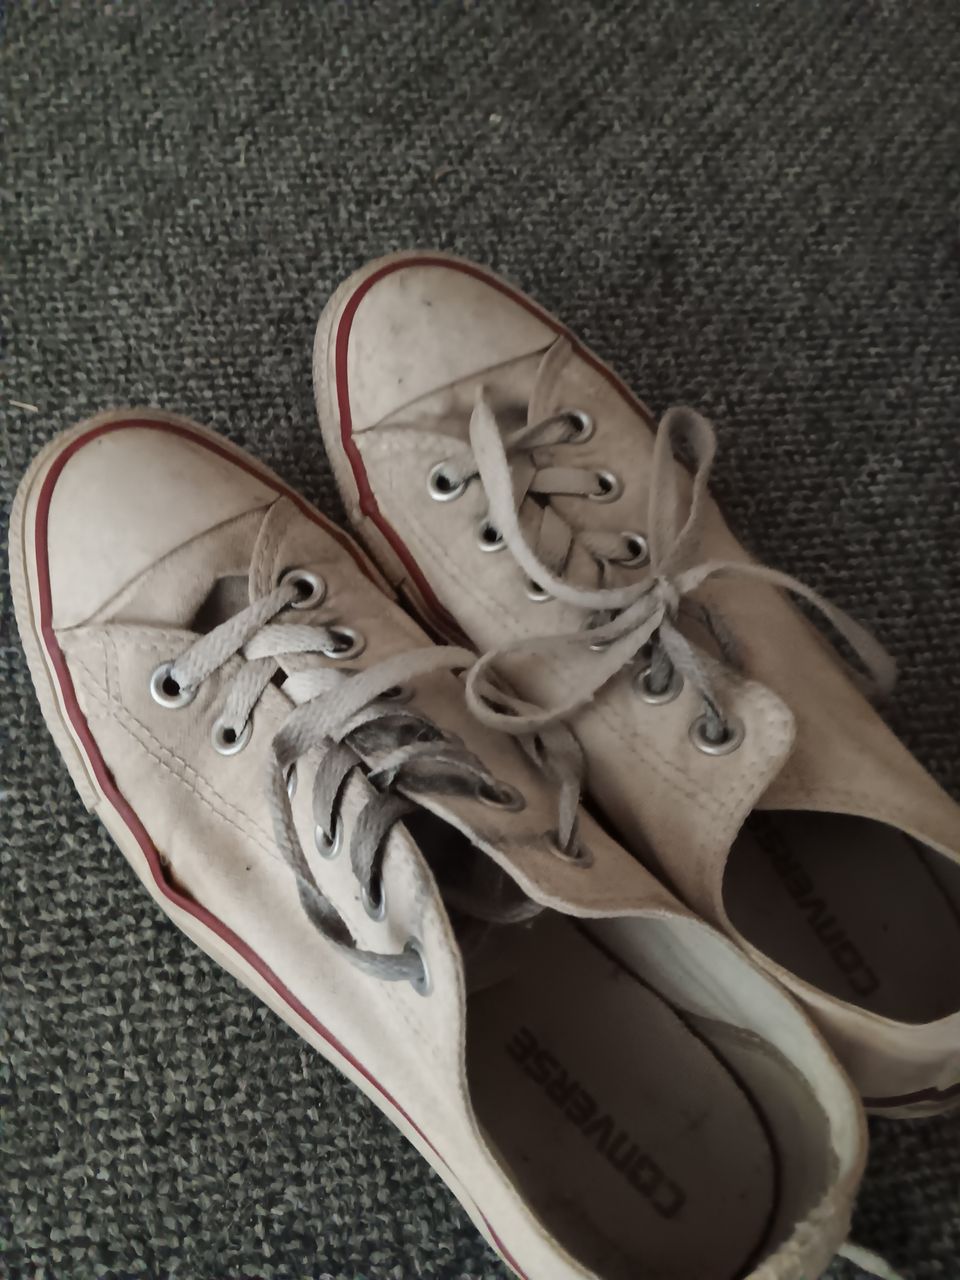 Converse kengät